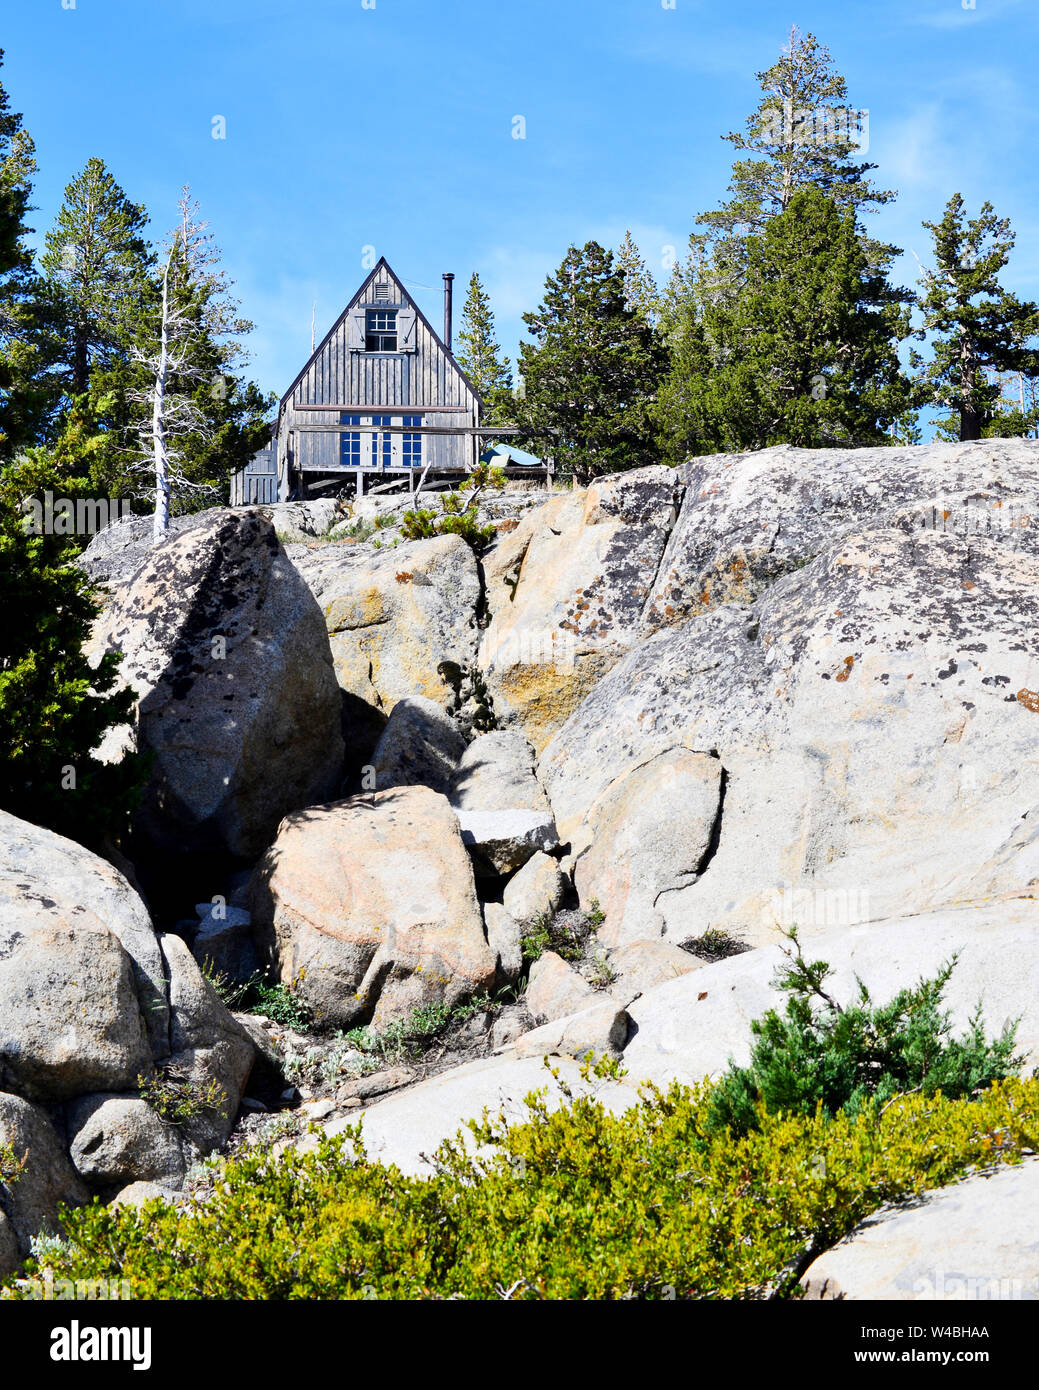 Grigio weathered legno cabina di montagna circondato da granito e alberi sempreverdi affacciato sul lago Caples, Sierra Nevada, in California, Stati Uniti d'America Foto Stock